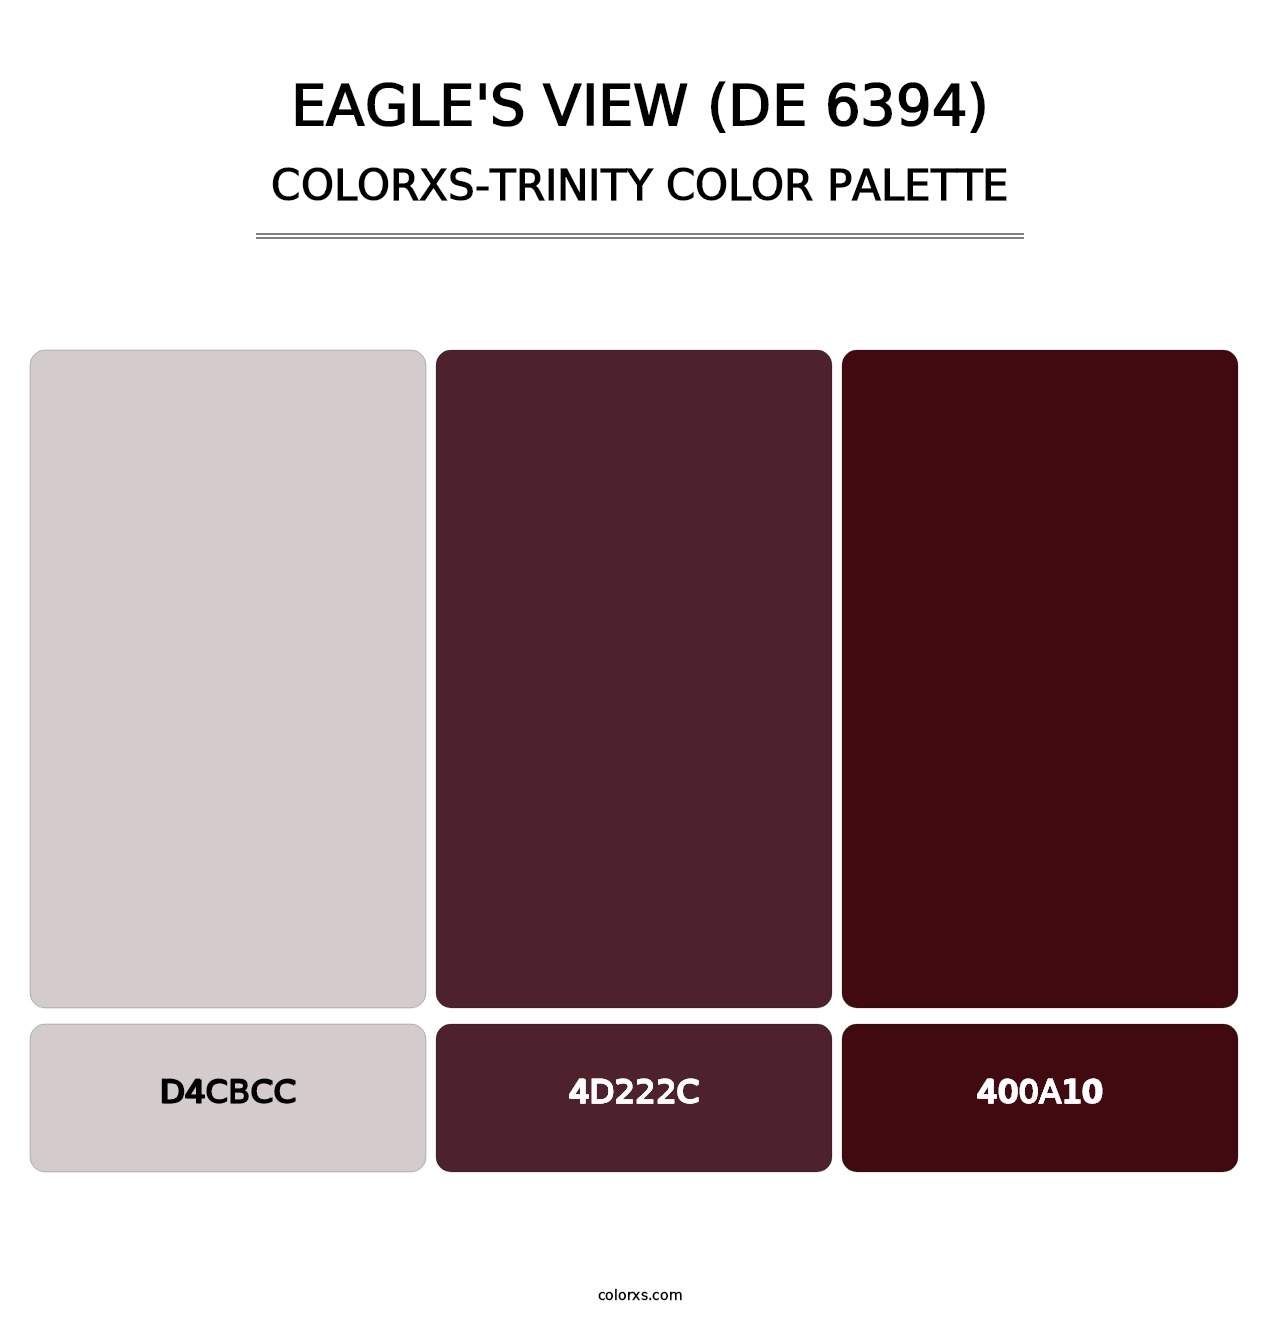 Eagle's View (DE 6394) - Colorxs Trinity Palette